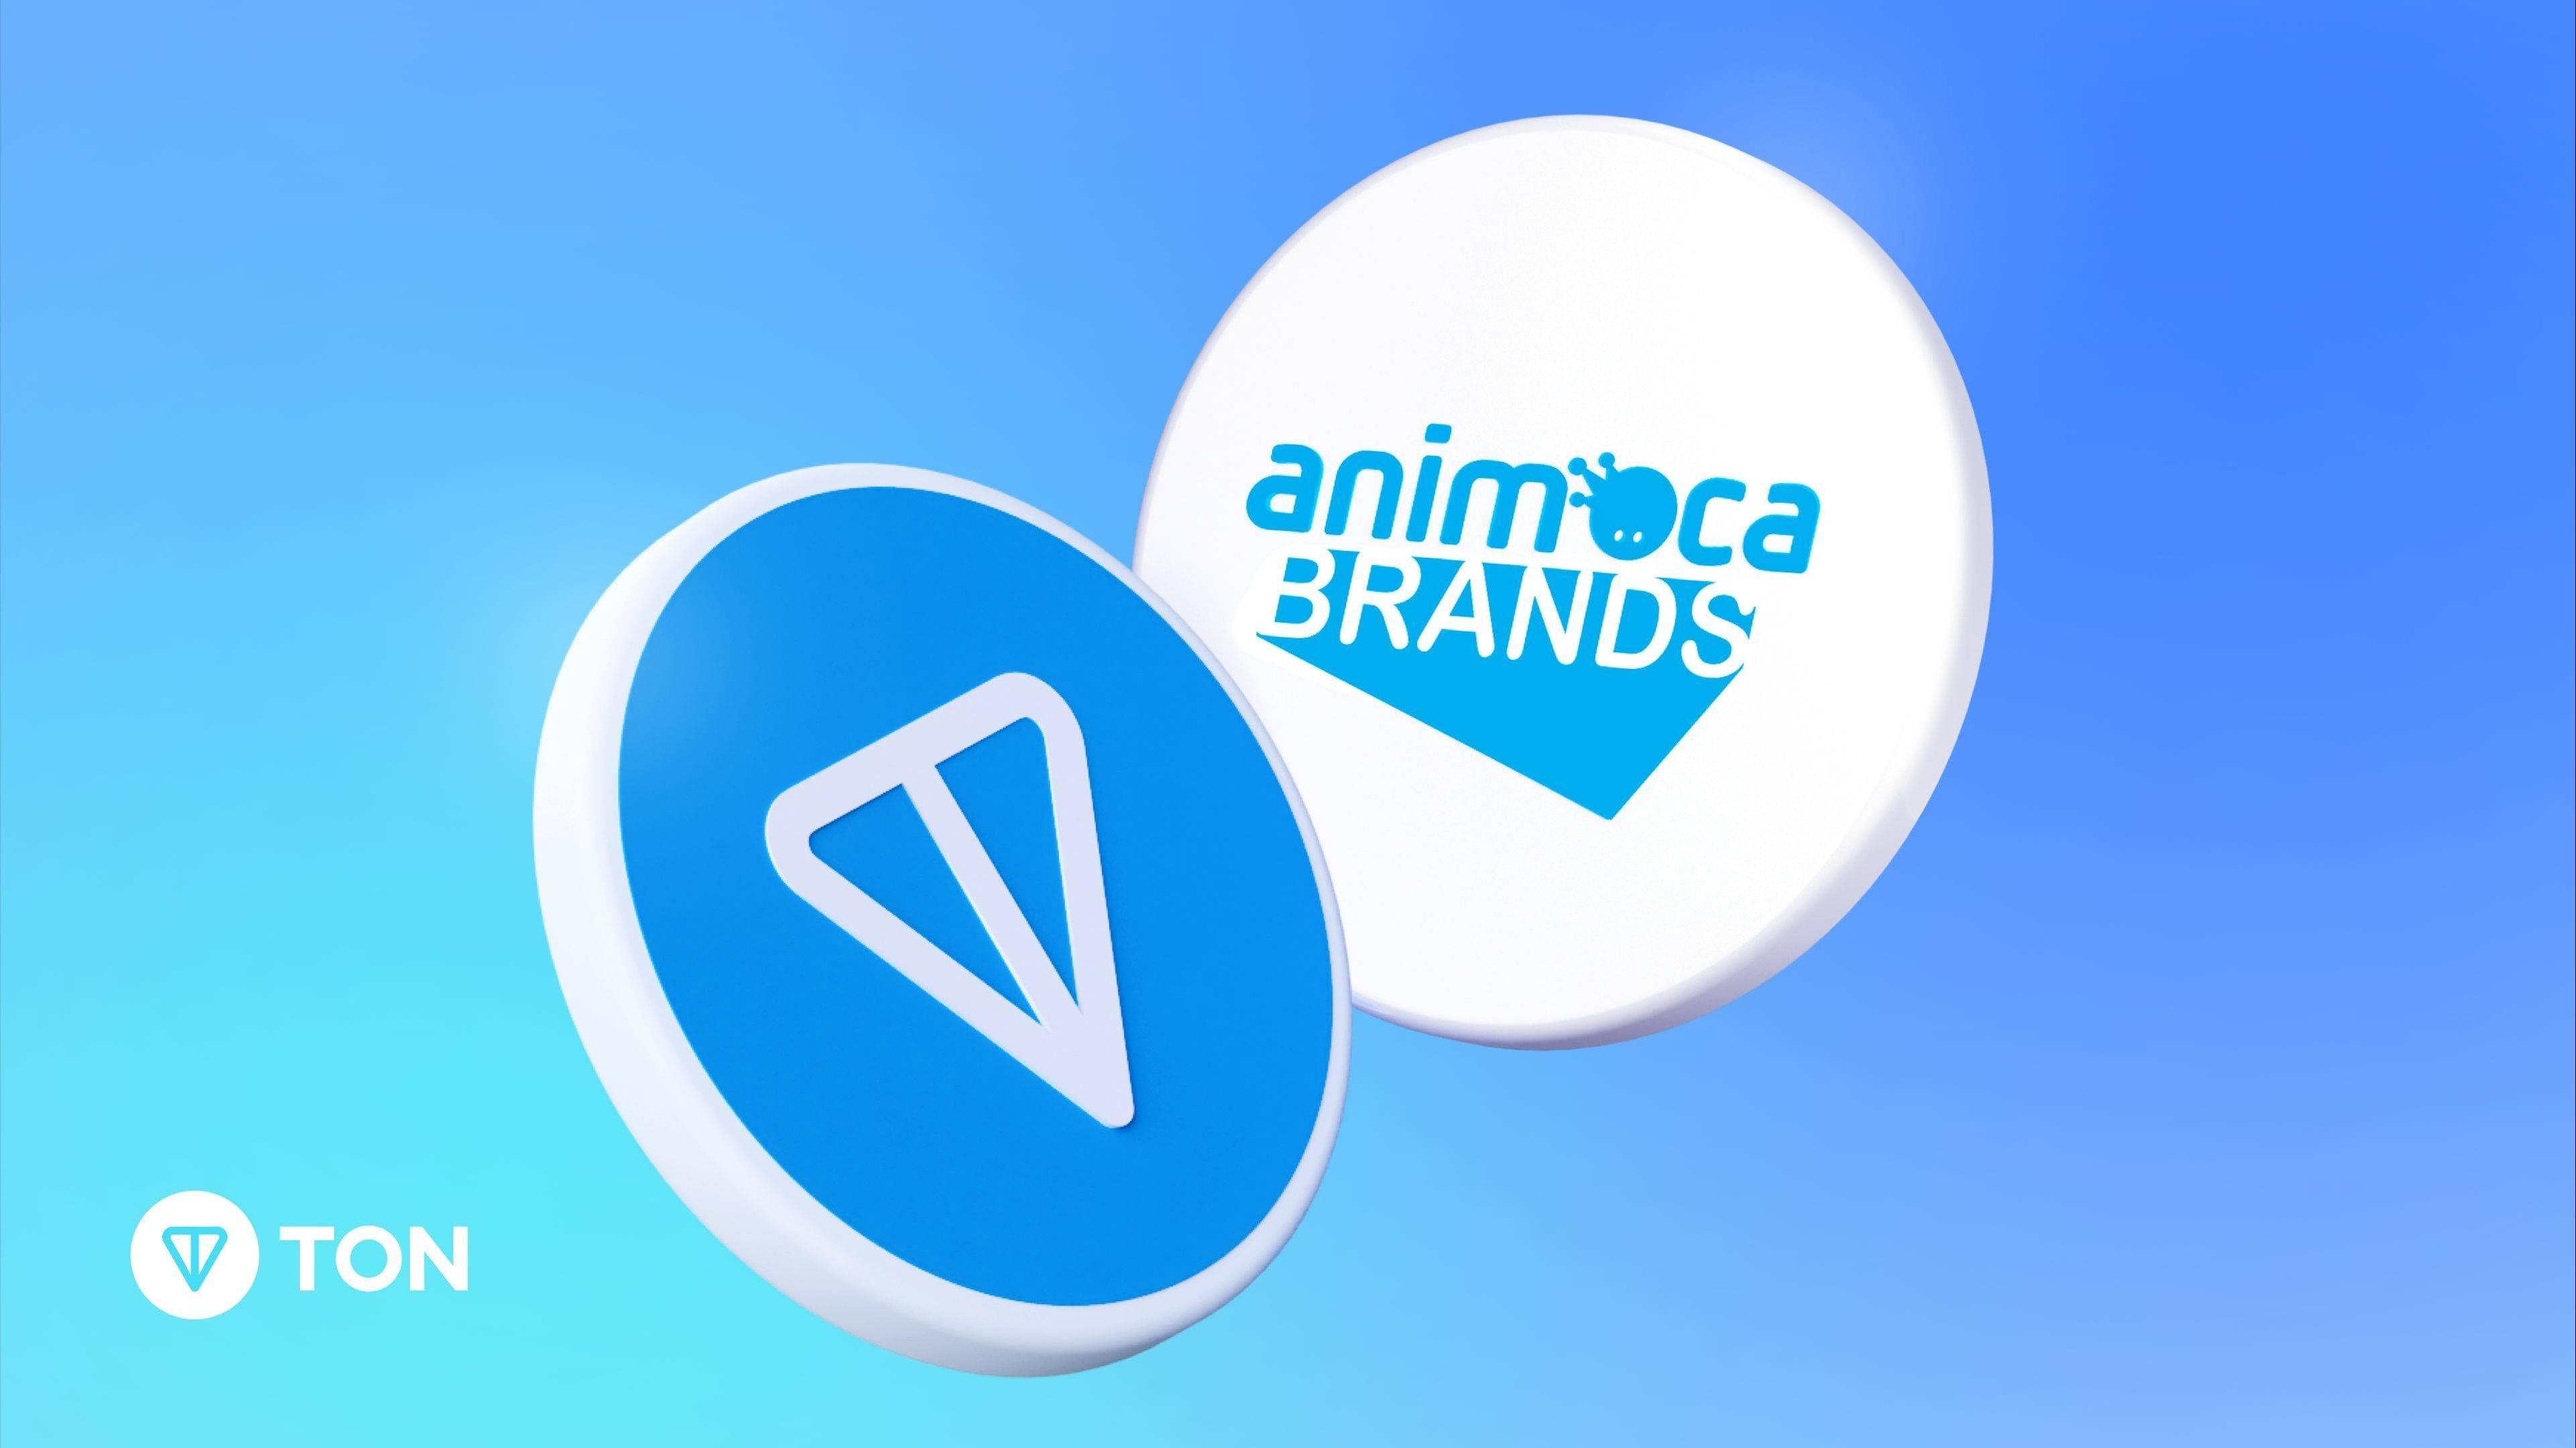 animoca-brands-cong-bo-dau-tu-vao-the-open-network-ton